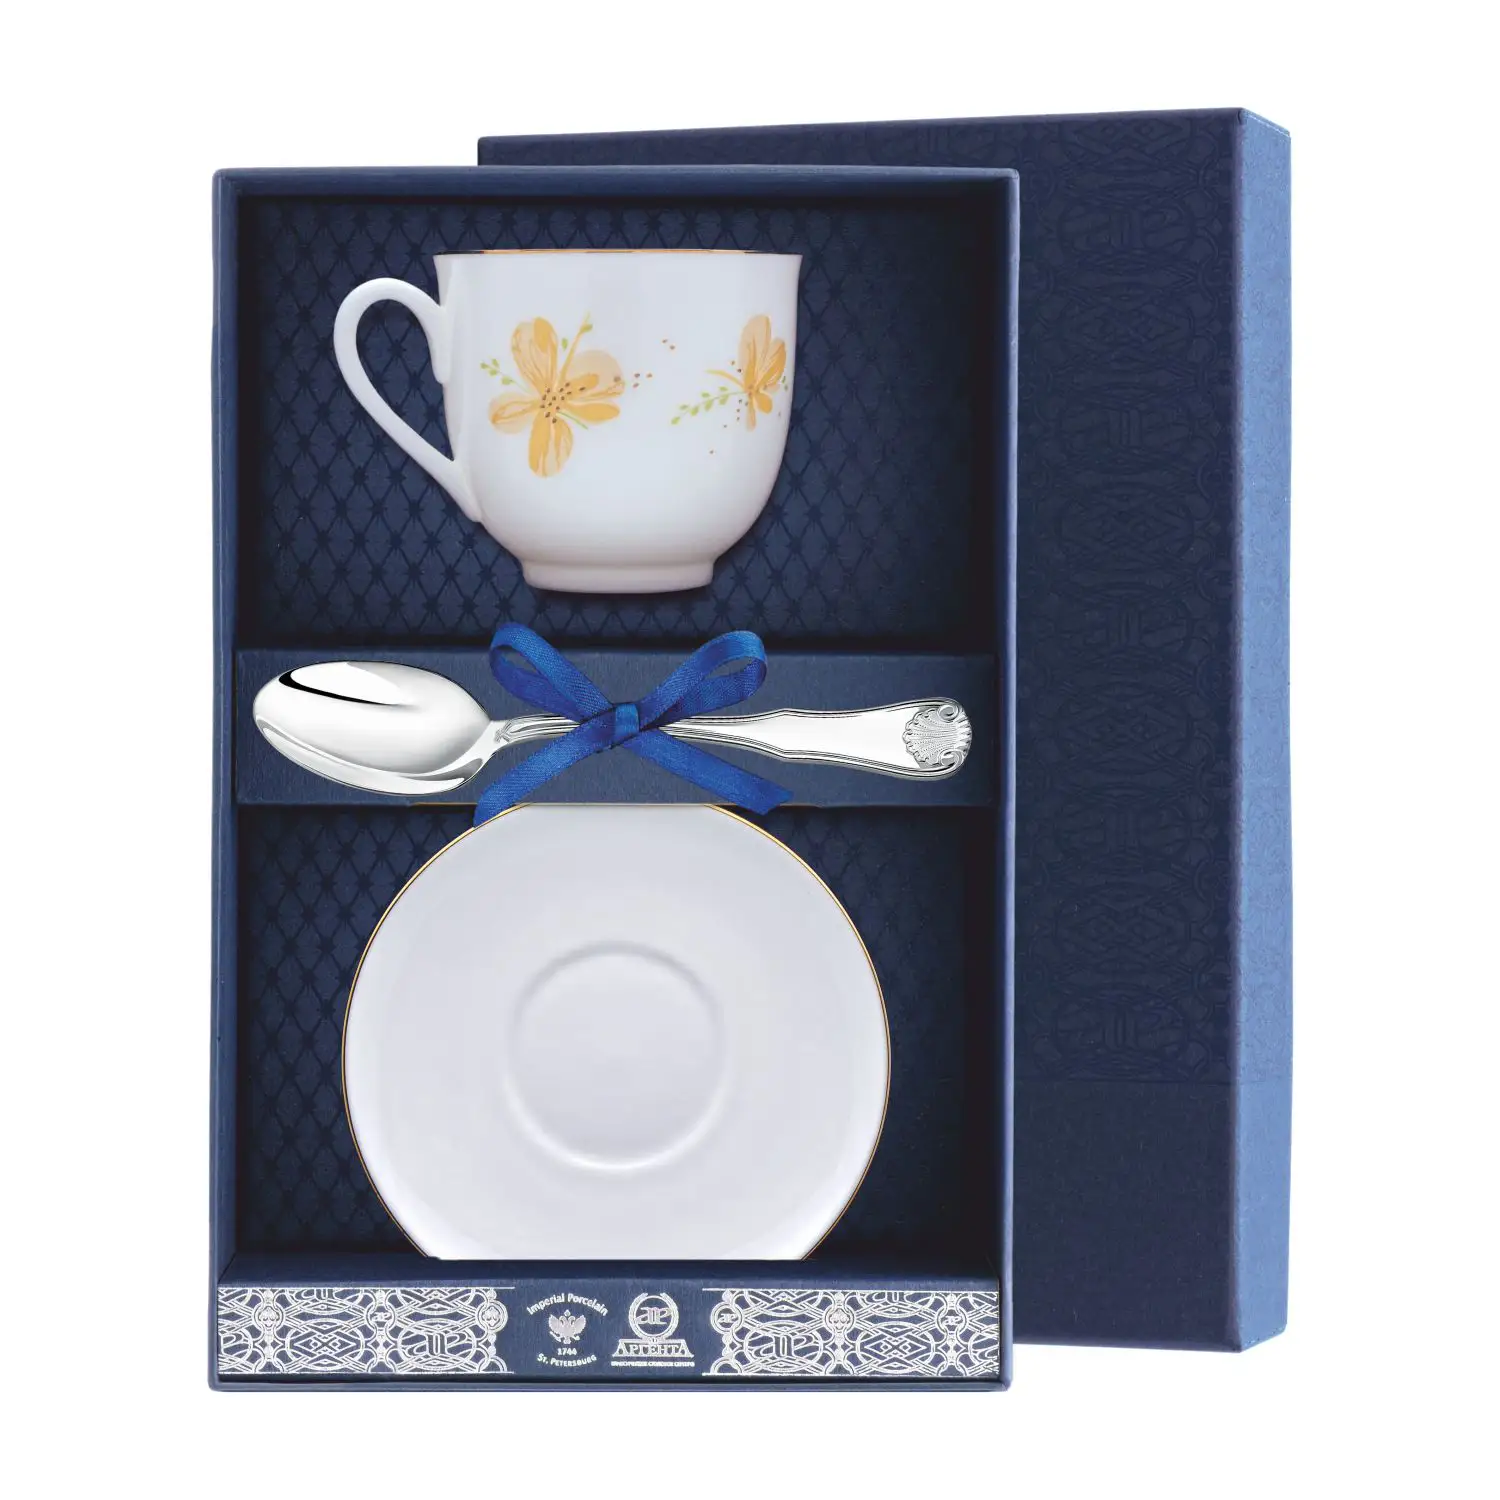 Набор чайный Ландыш - Желтые цветы: блюдце, ложка, чашка (Серебро 925) набор чайный ландыш желтые цветы ложка рамка для фото чашка серебро 925